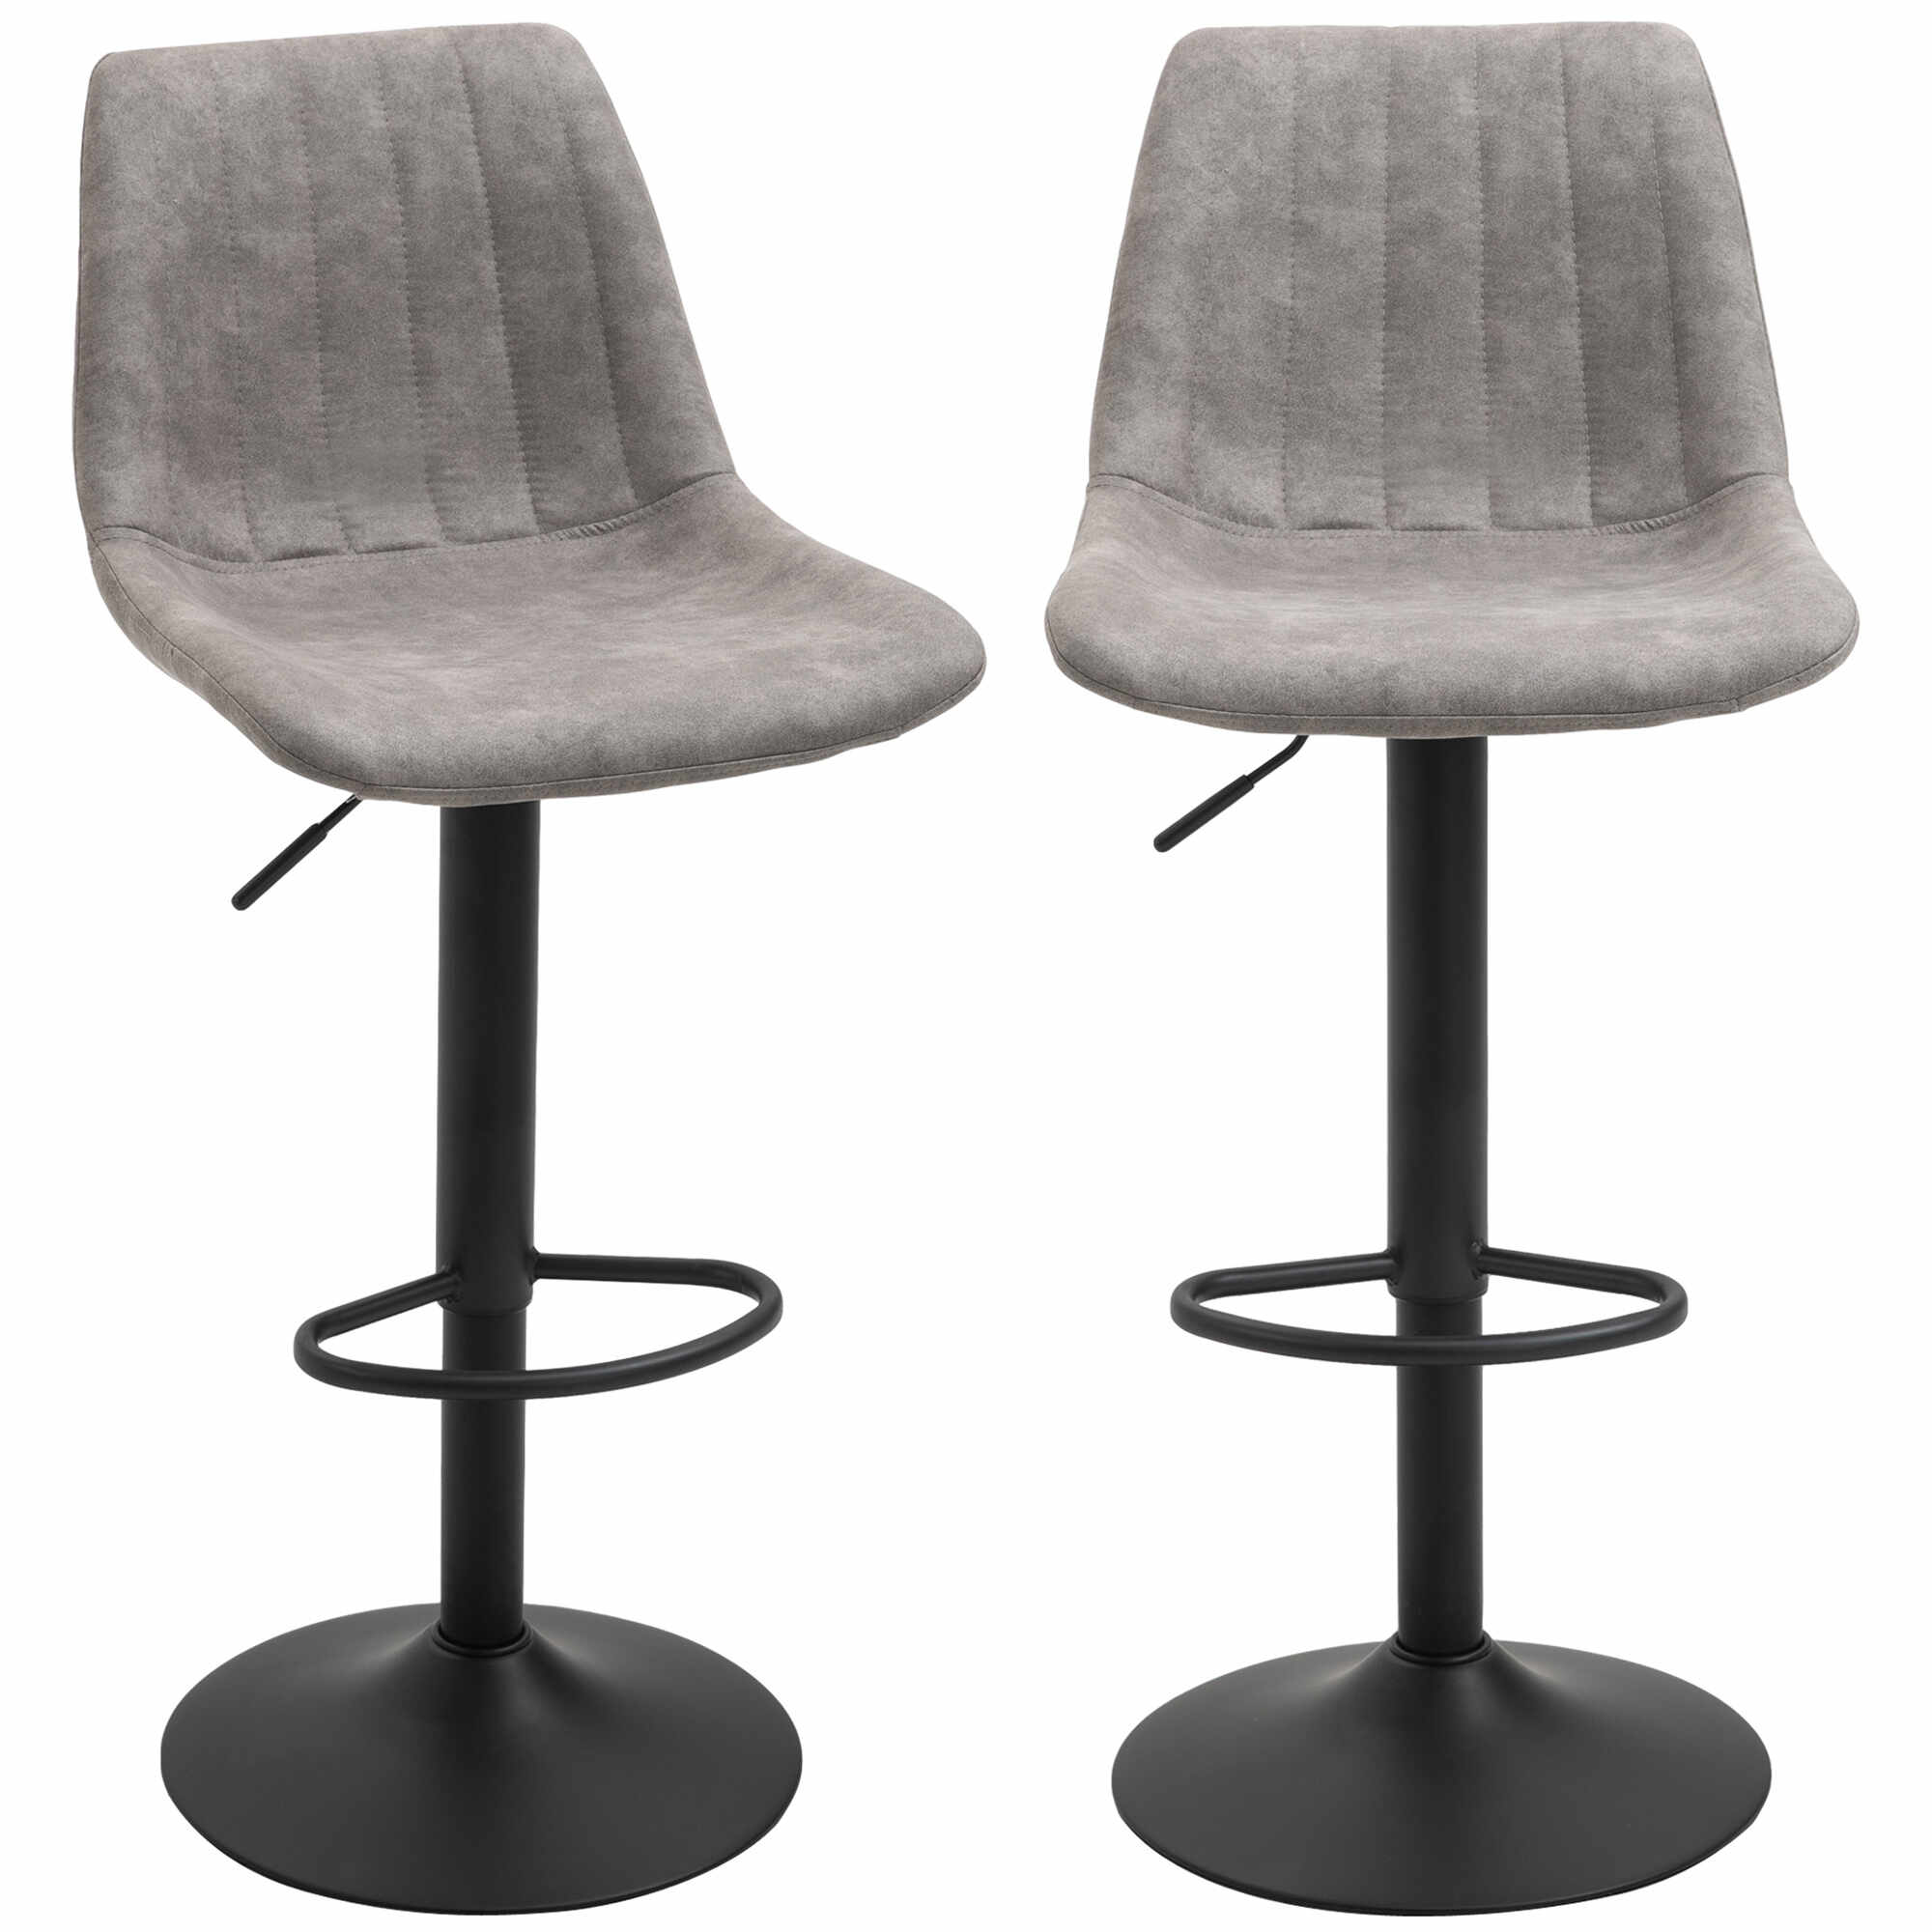 HOMCOM Set de 2 scaune de bar in stil industrial cu spatar din microfibra, suport pentru picioare si inaltime reglabila gri